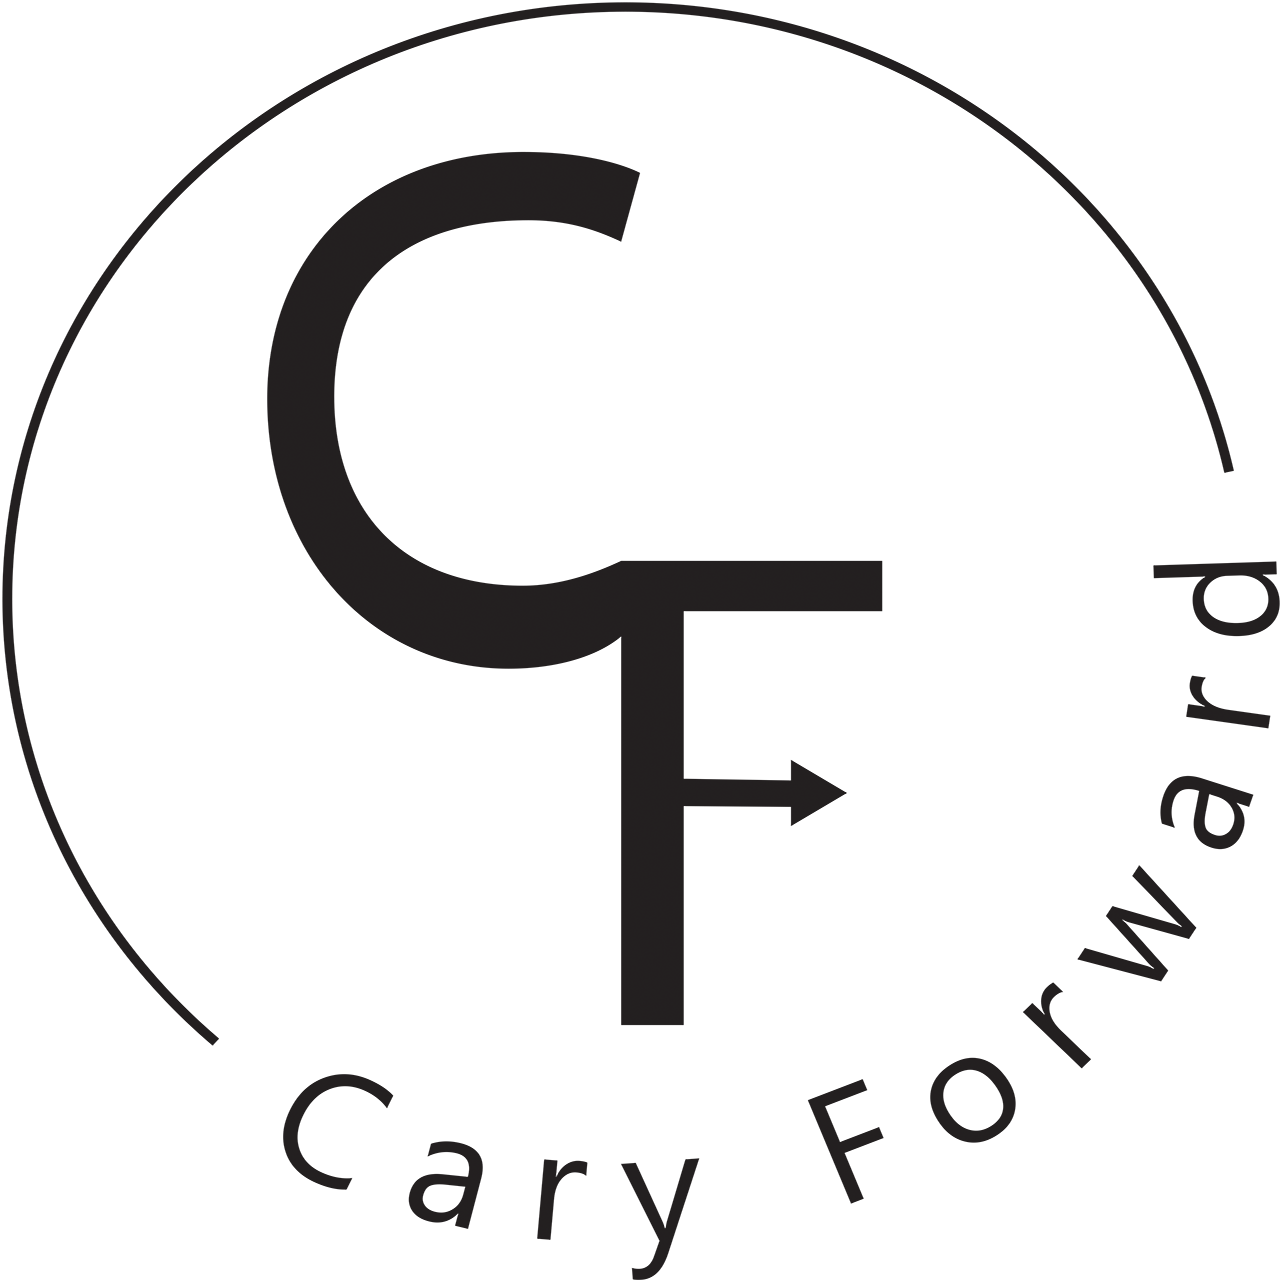 Cary Forward logo